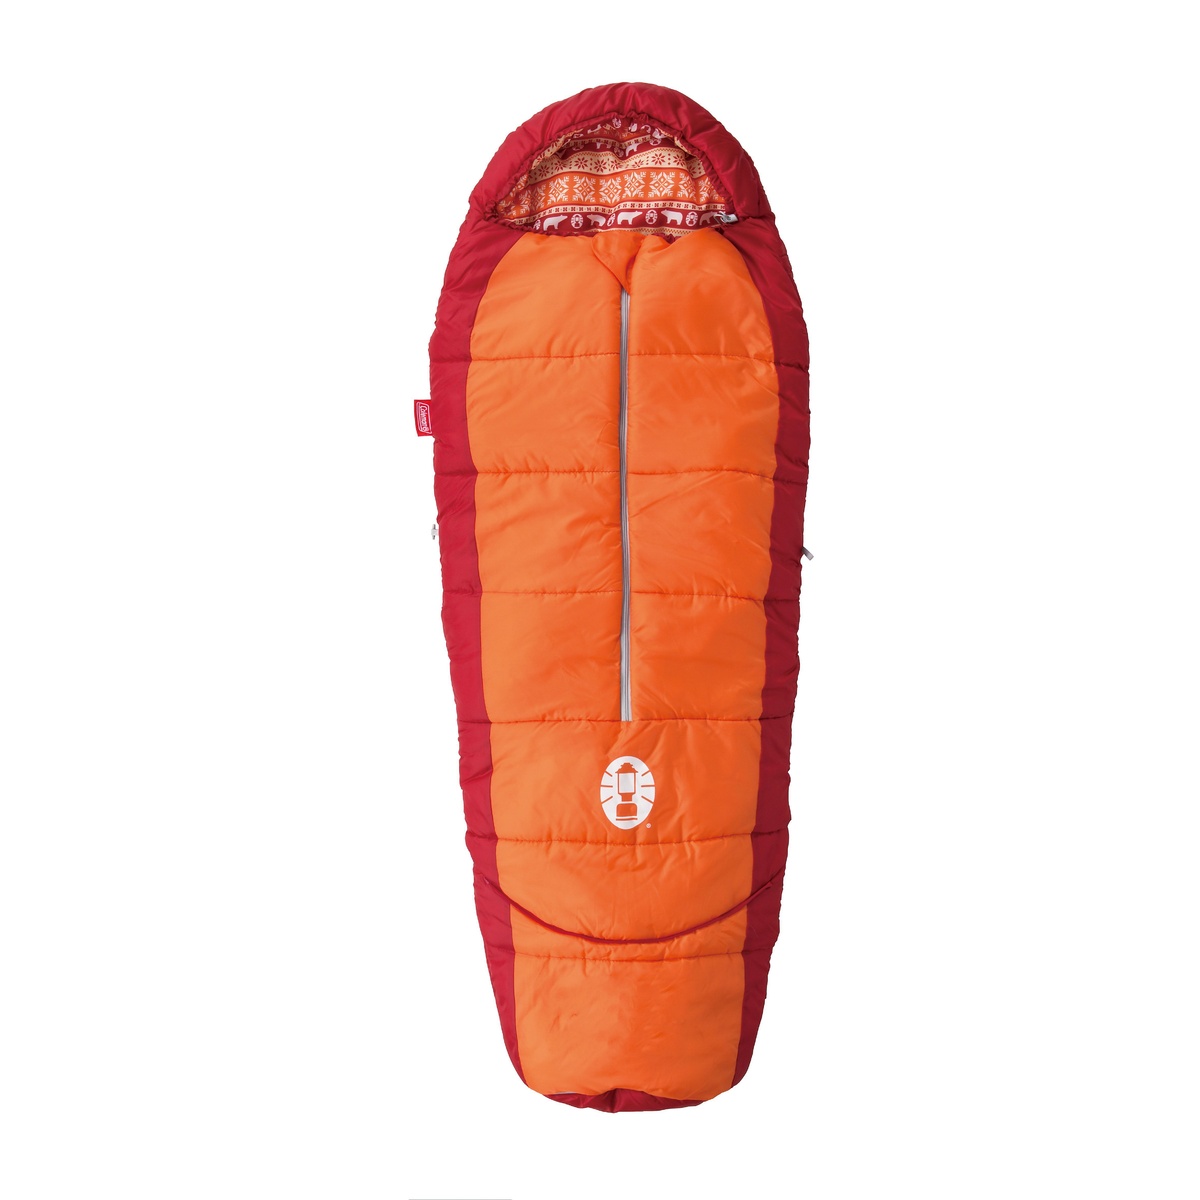 【楽天市場】コールマン (COLEMAN) キッズマミー アジャスタブル/C4オレンジ キャンプ用品 寝袋 スリーピングバッグ ジュニア用